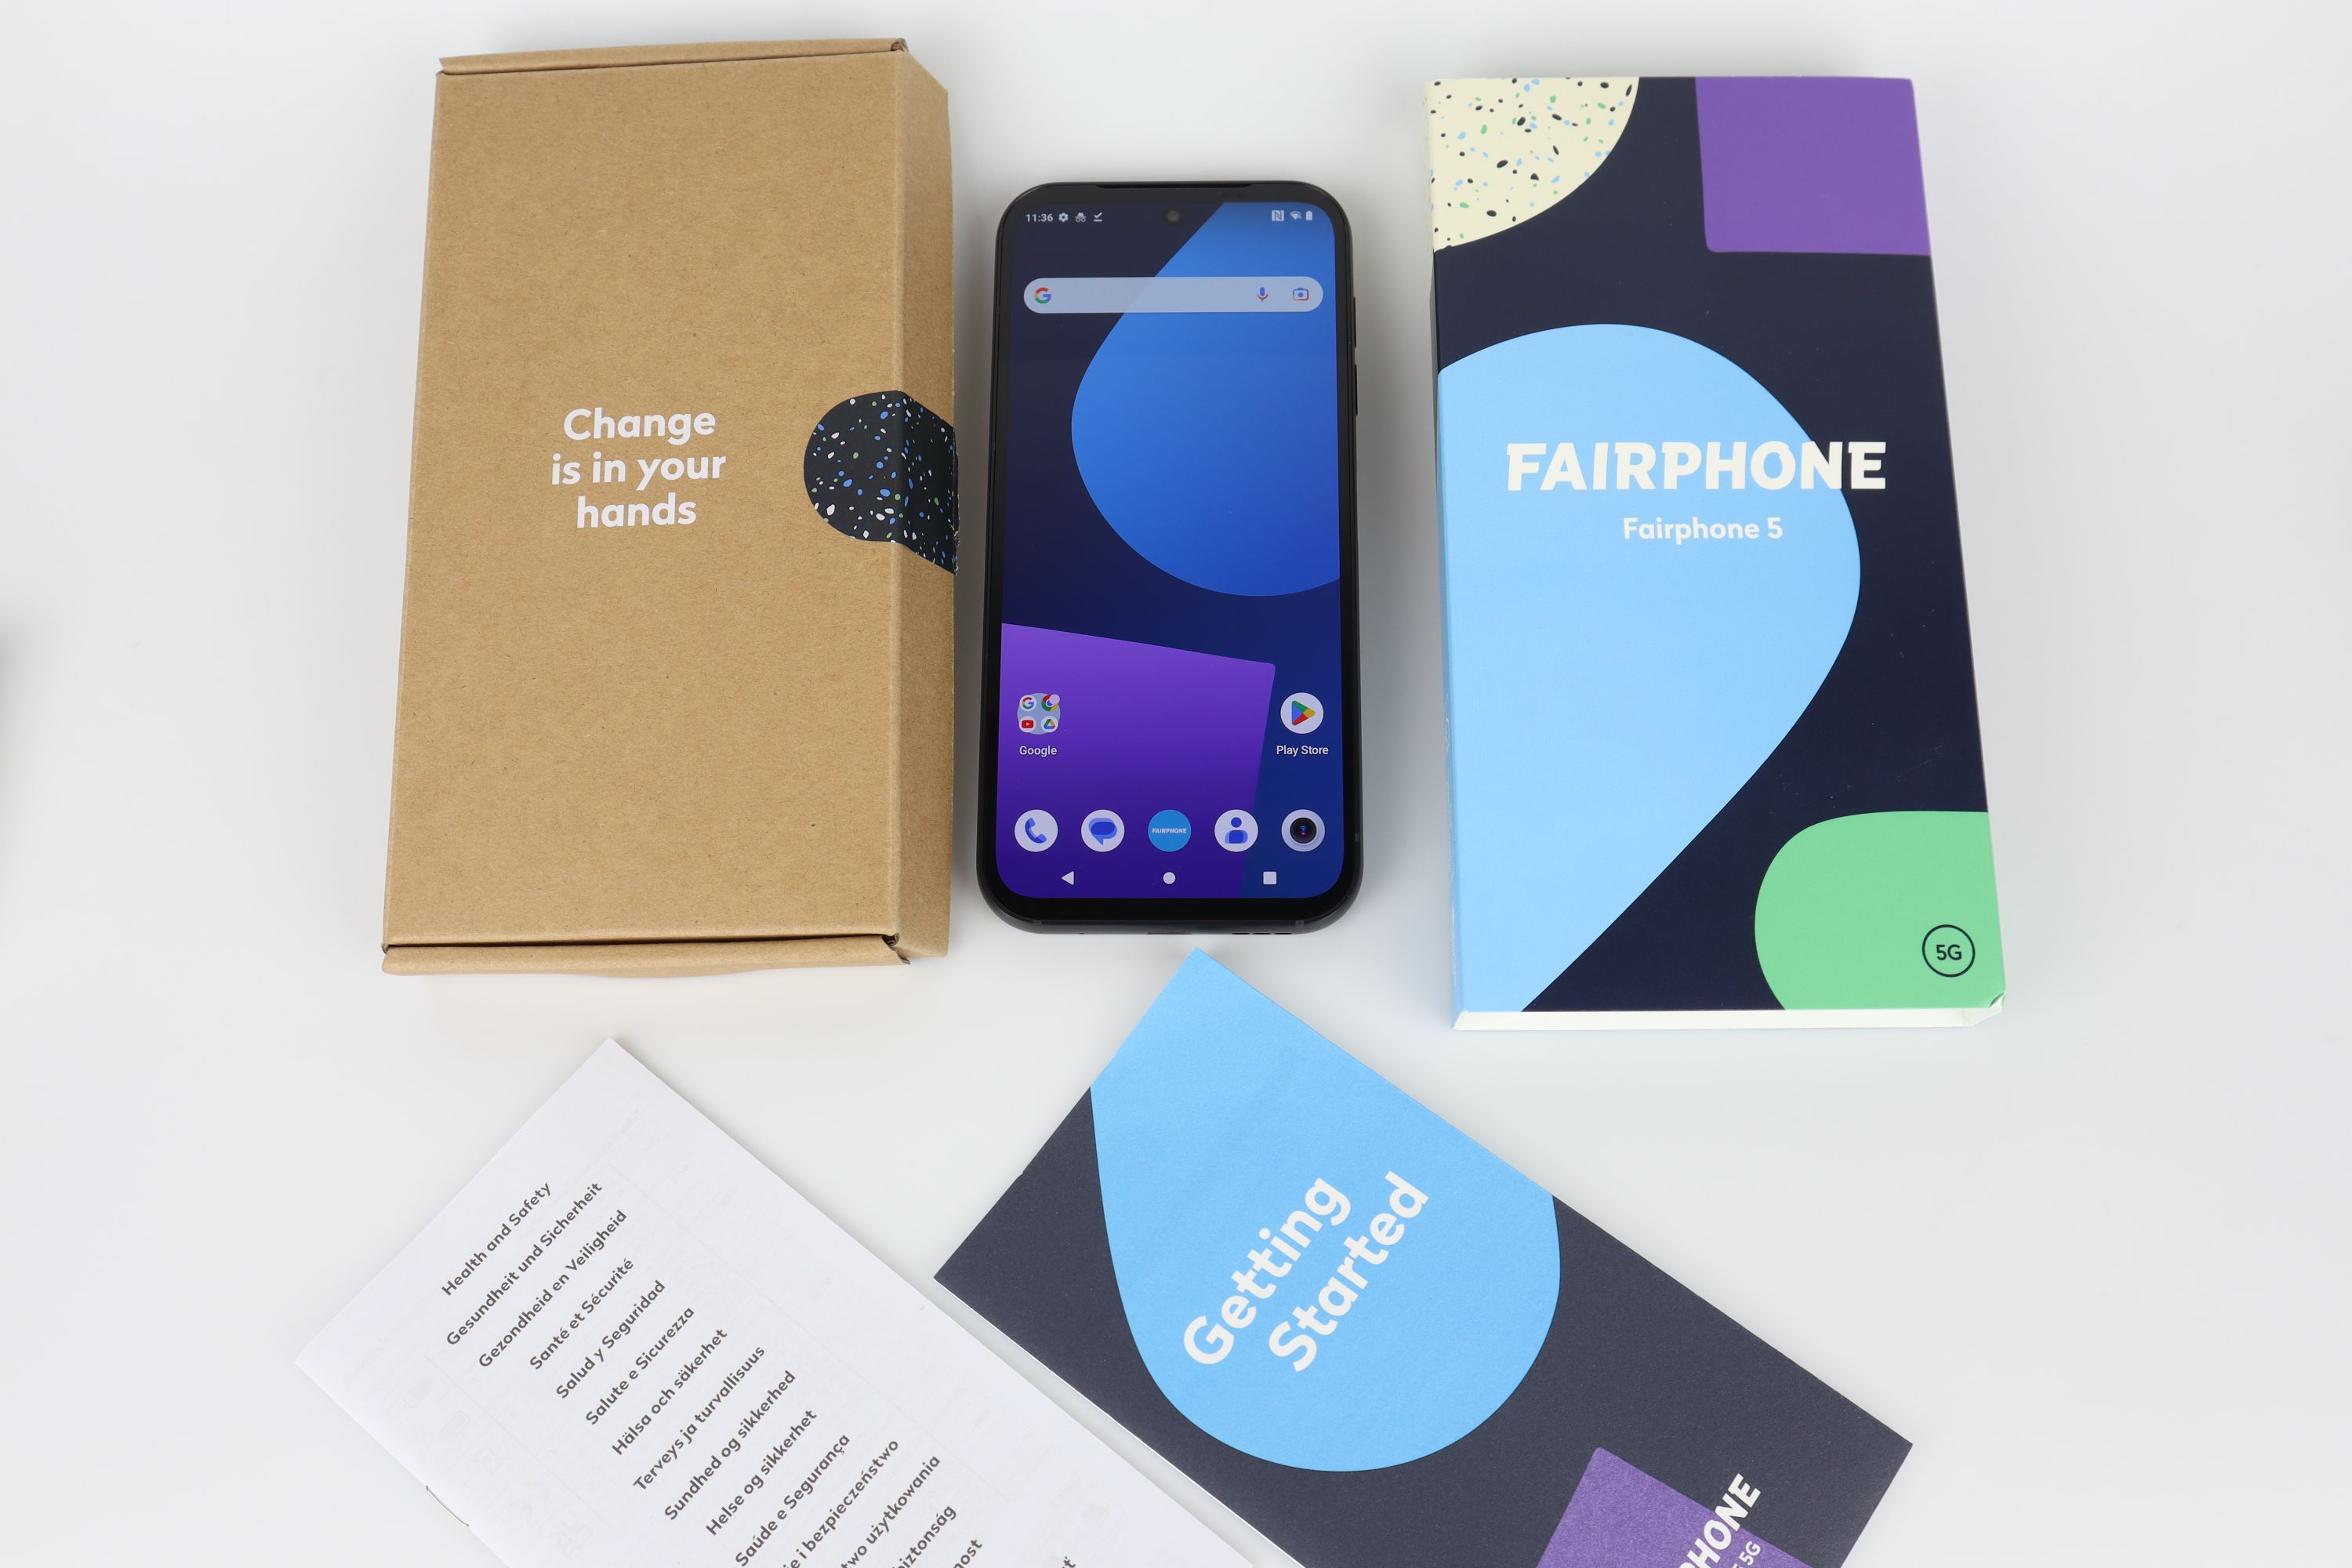 Das und Fairphone nachhaltige Smartphone? - 5 faire Test